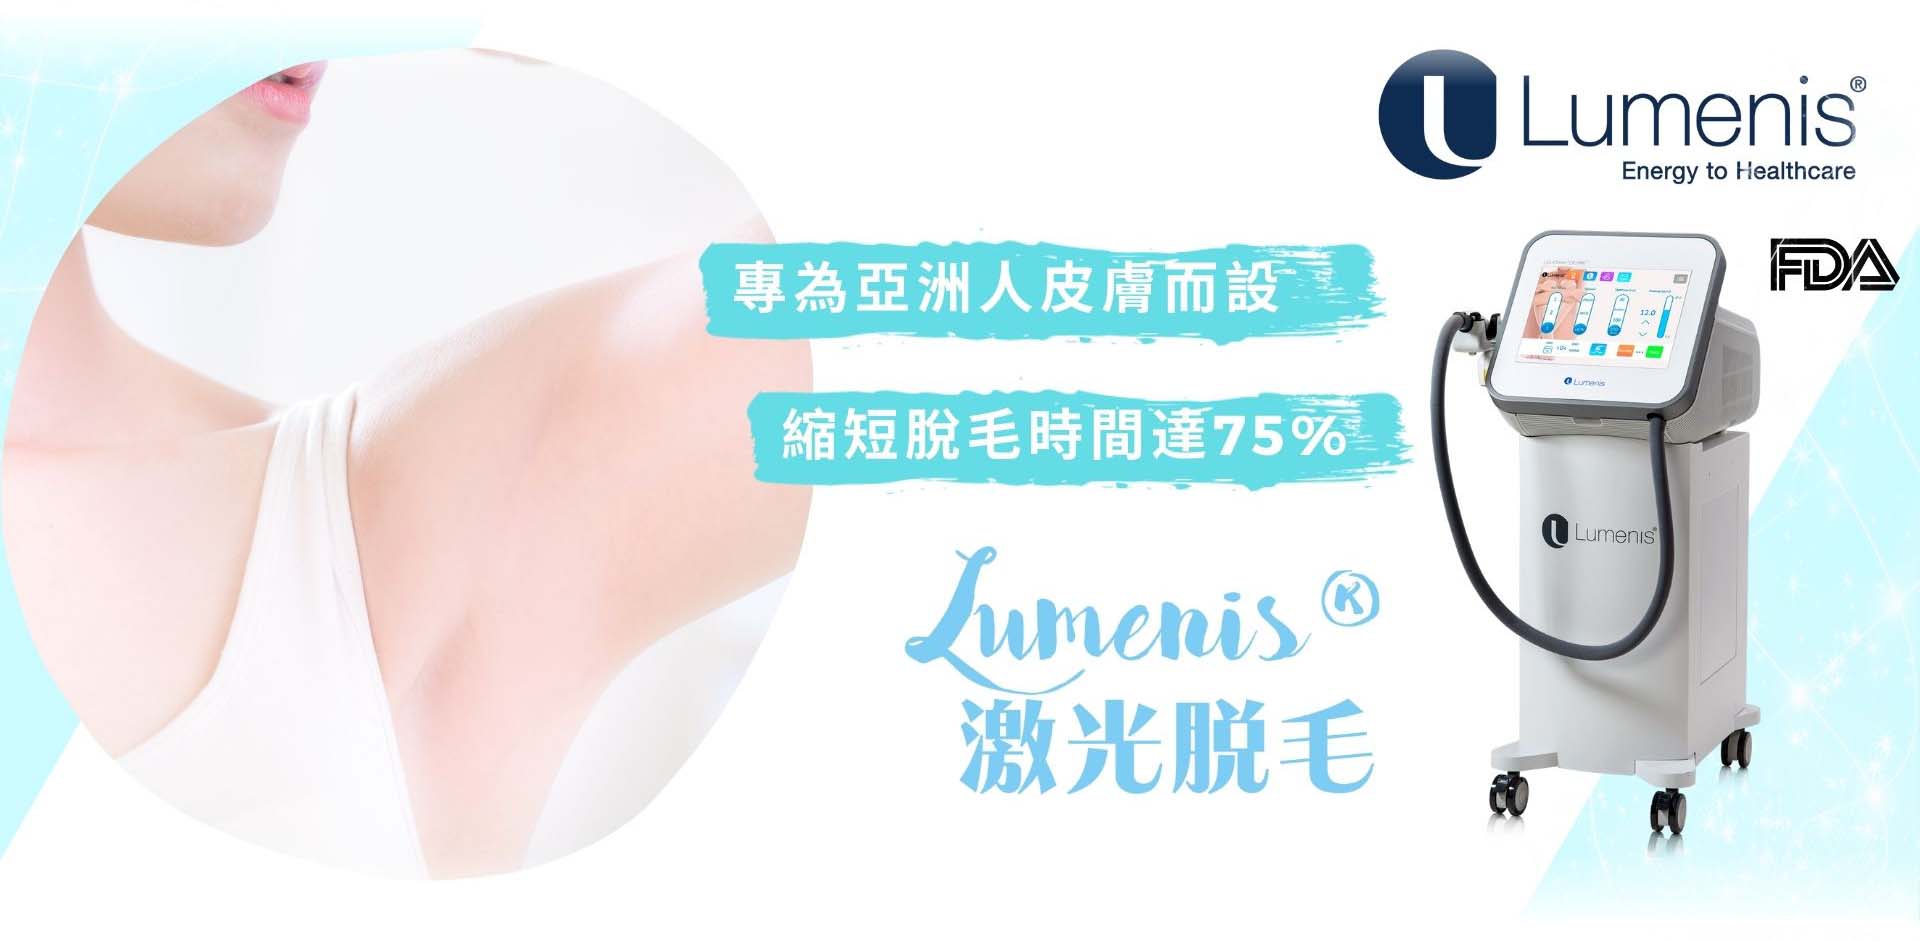 全球最大的激光系統製造公司Lumenis®  專為亞洲人皮膚而設計